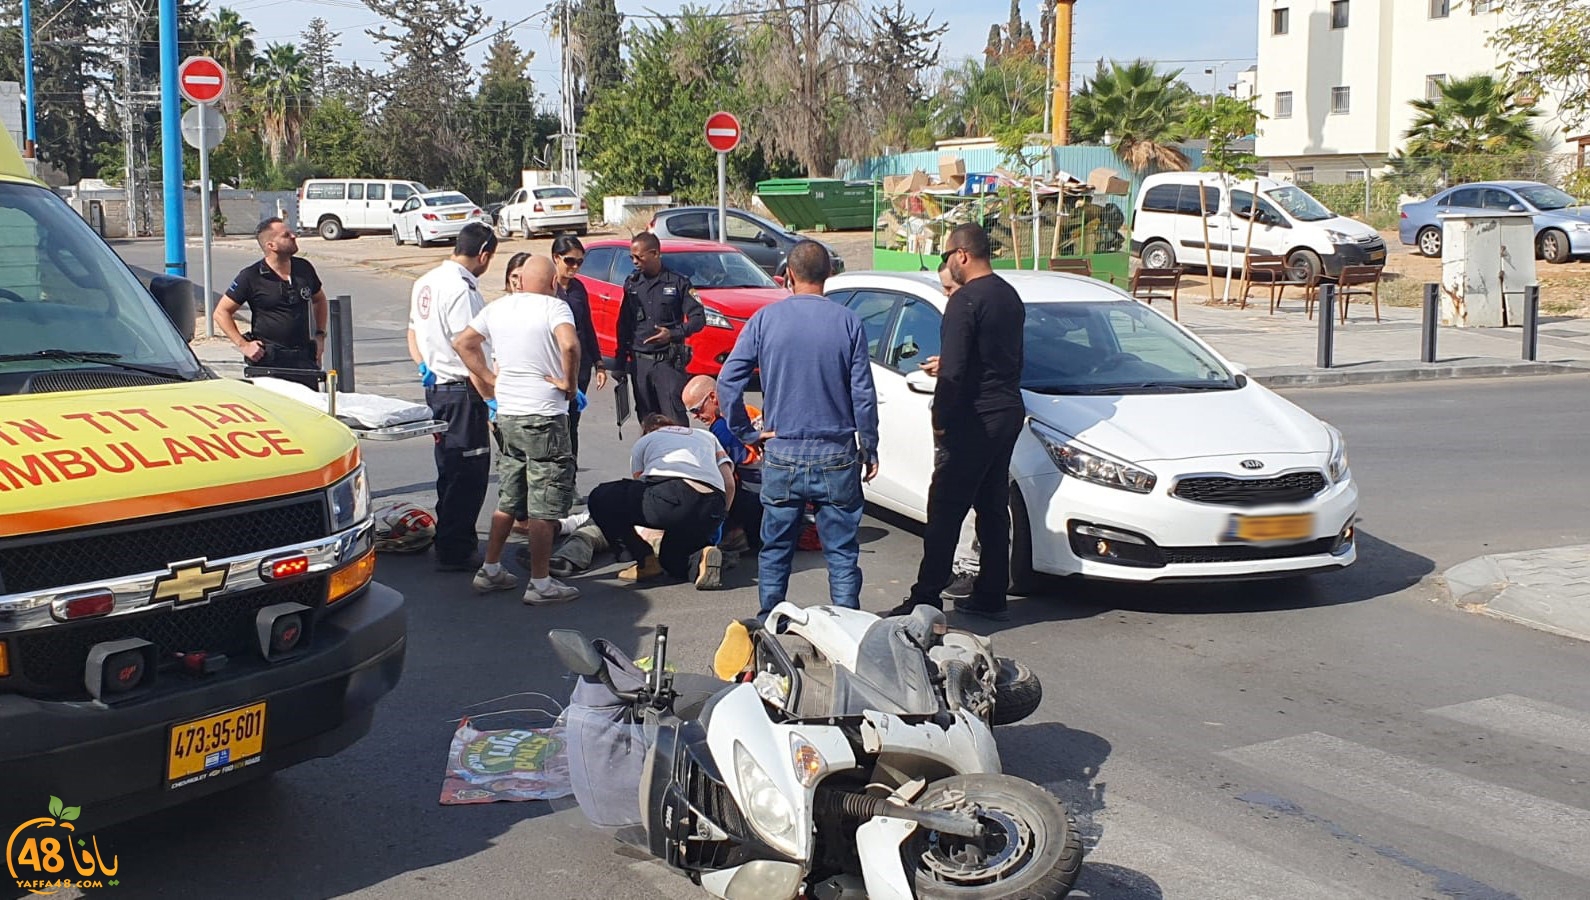  اللد: إصابة متوسطة لراكب دراجة نارية بحادث طرق بالمدينة